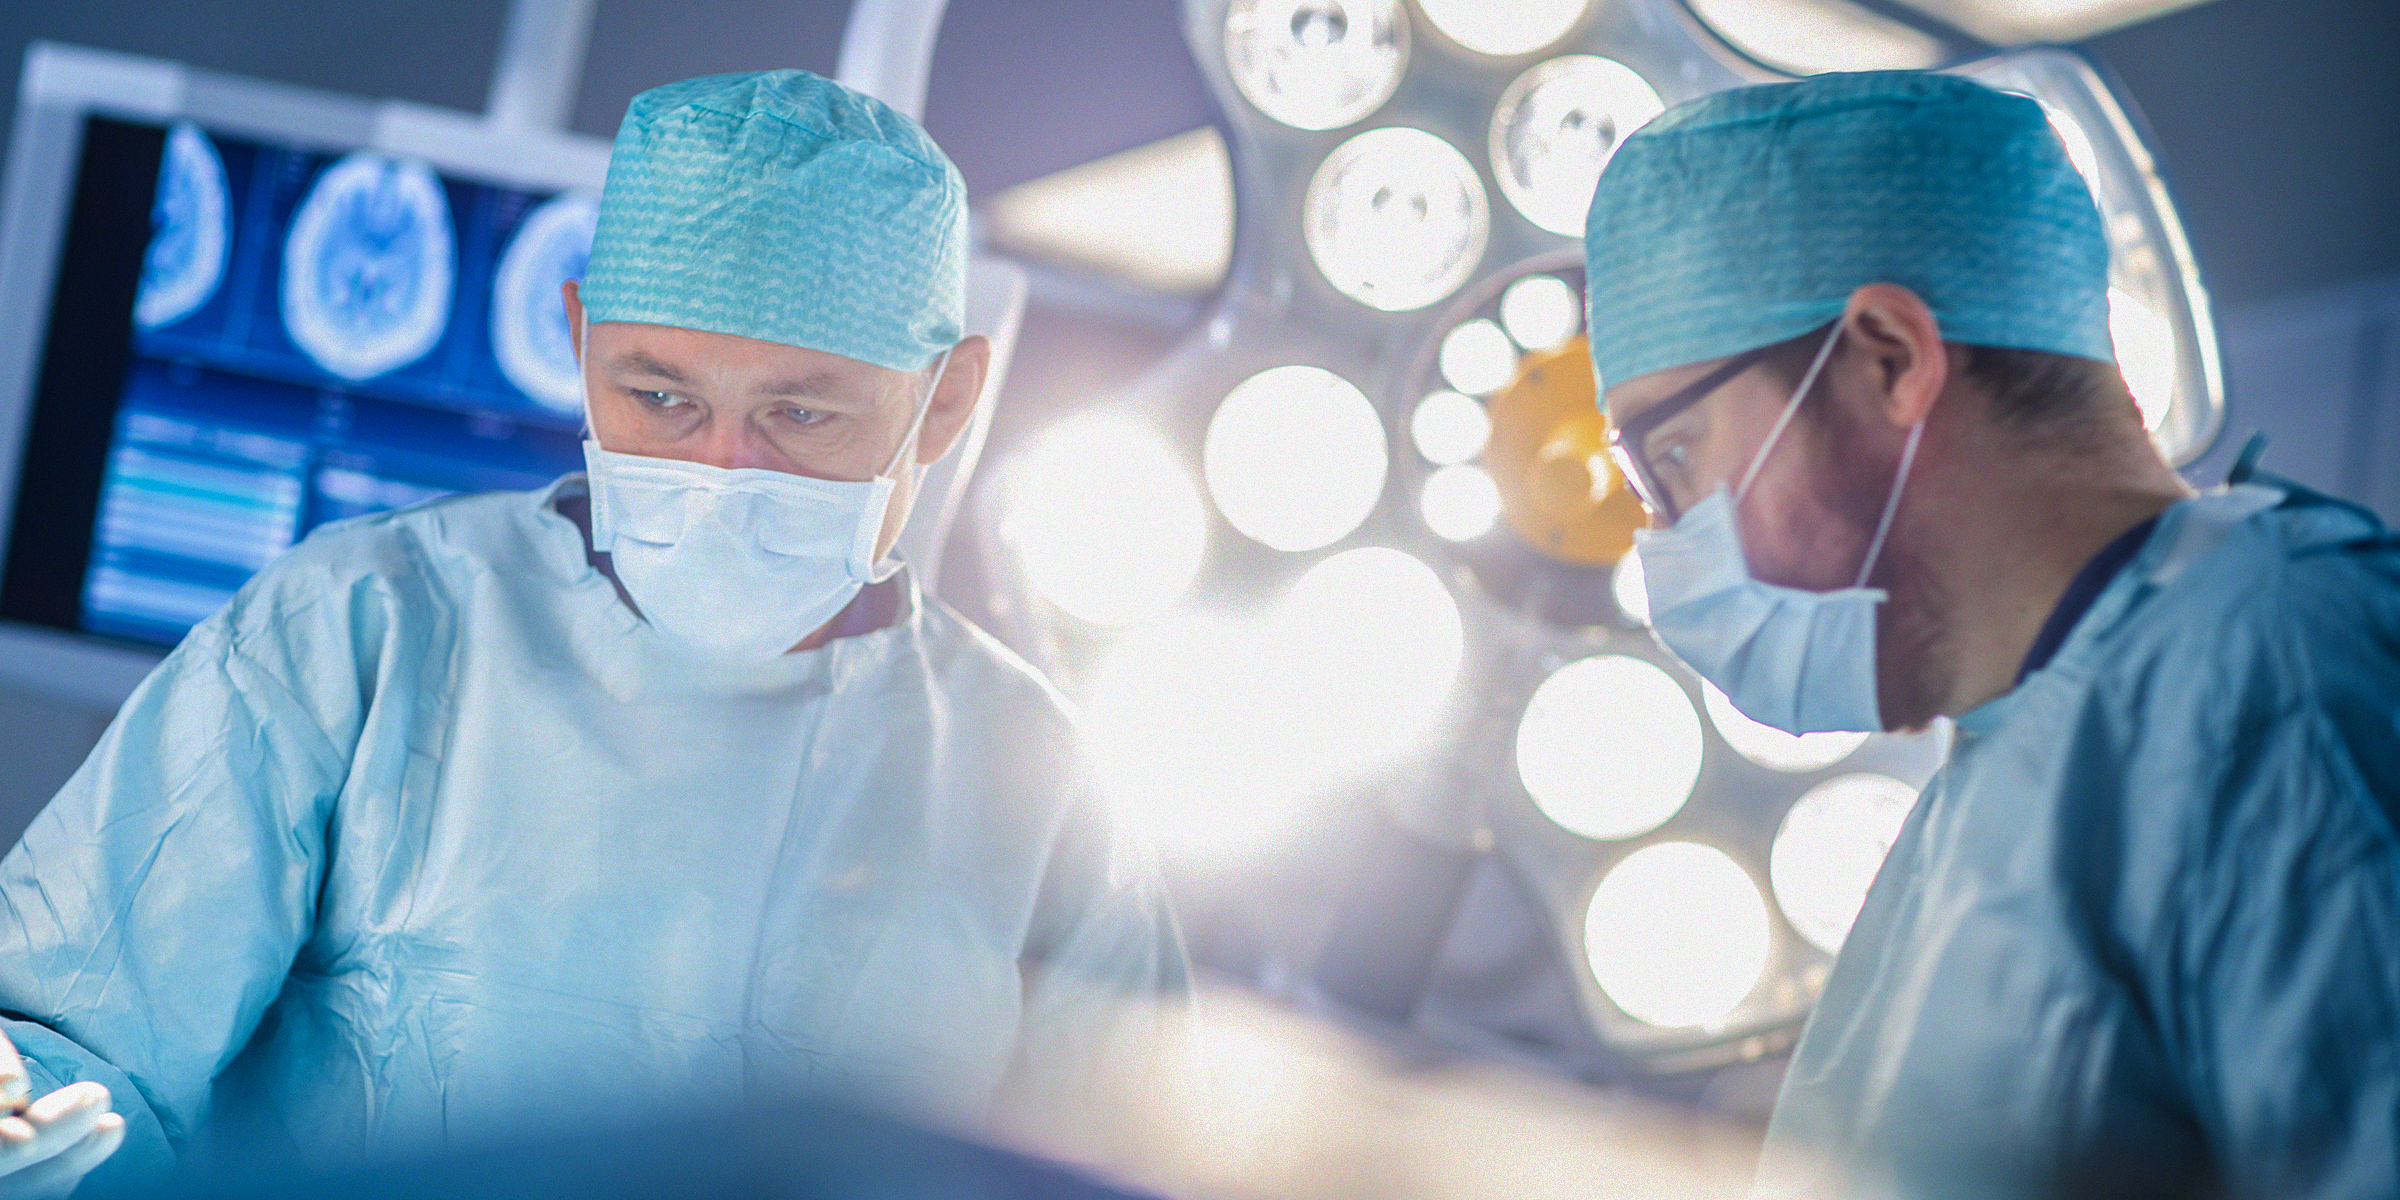 Ärzte in einem Operationssaal | Quelle: Shutterstock